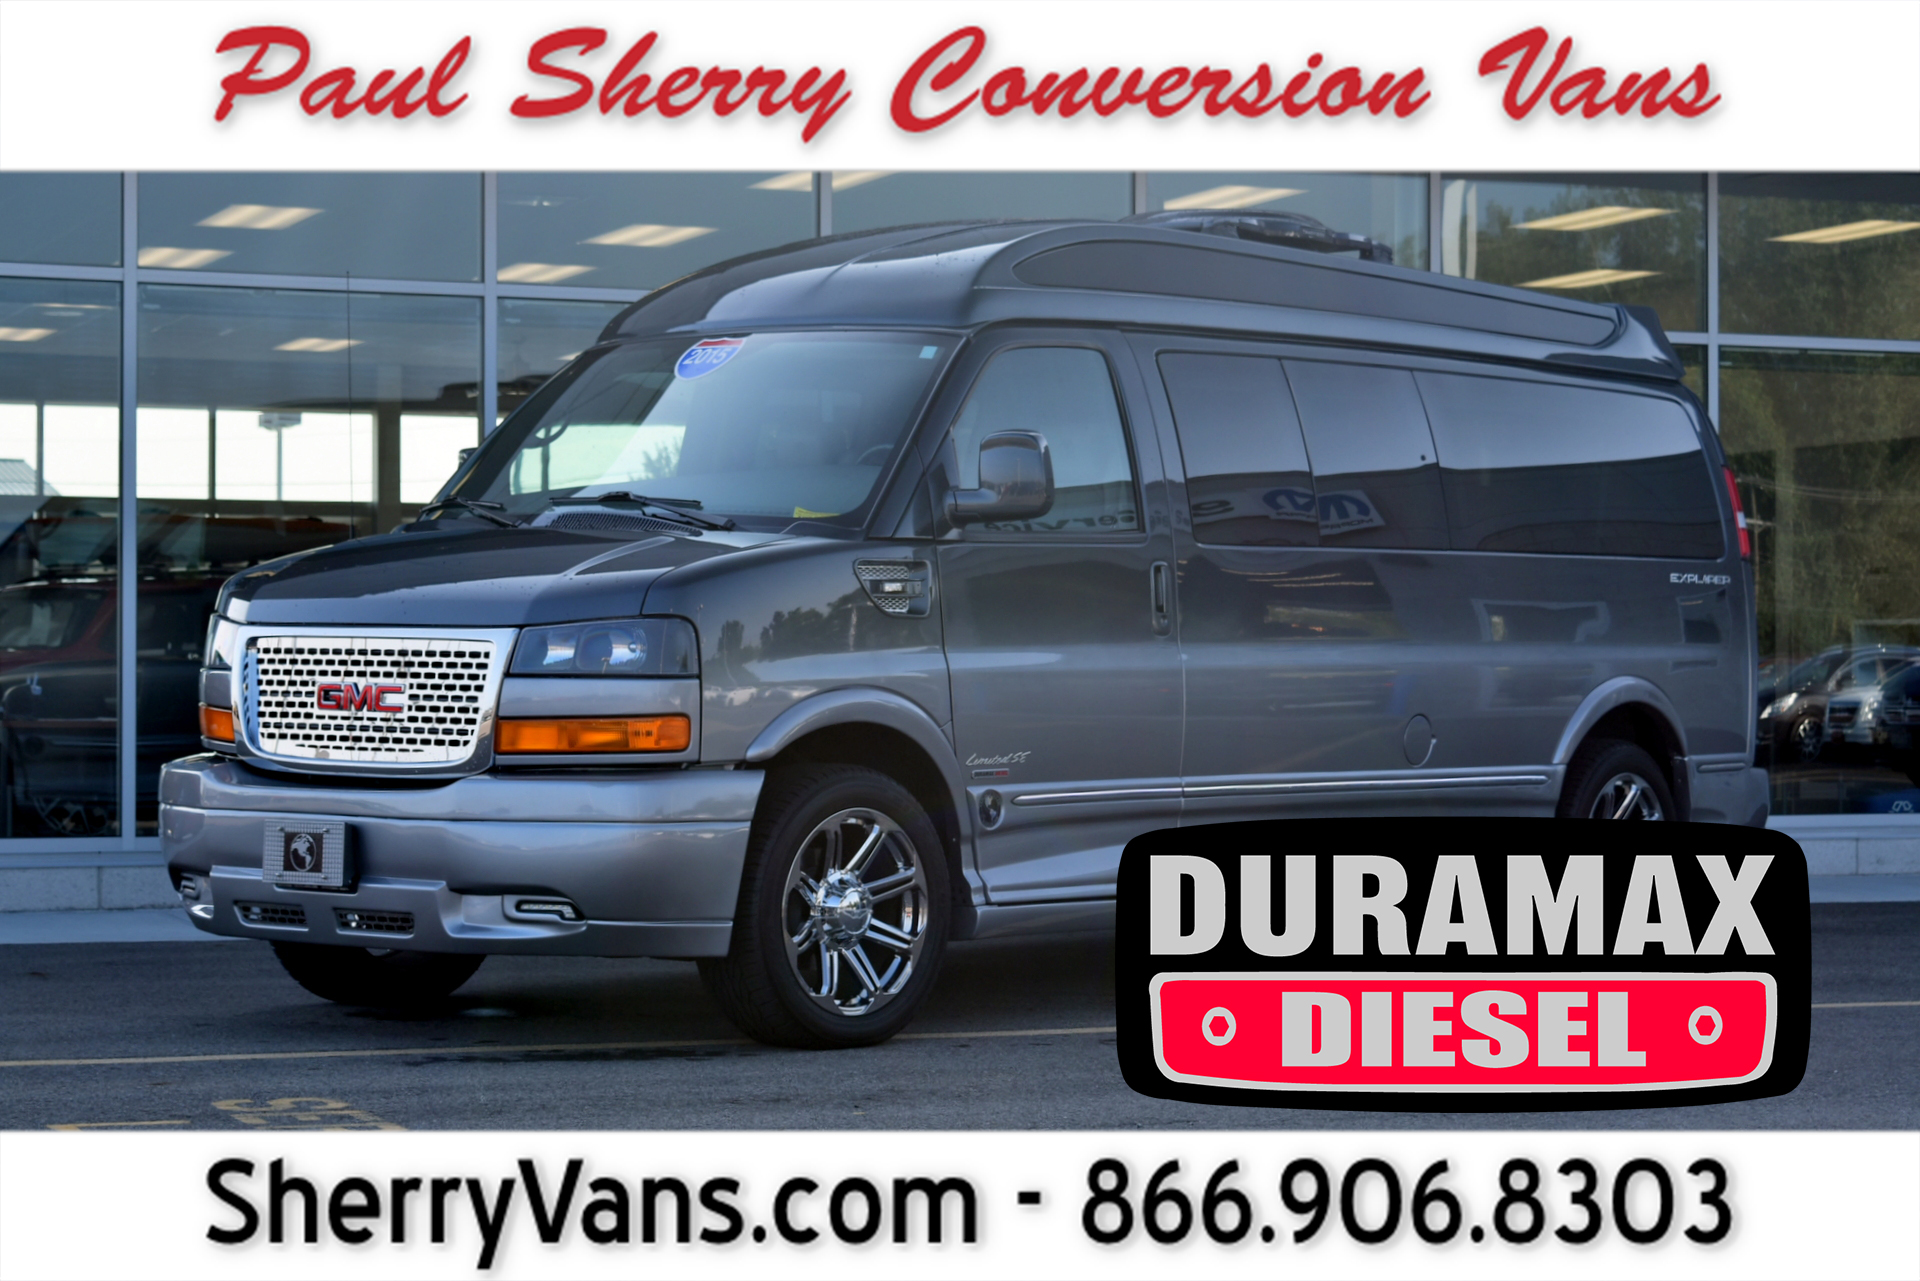 2015 GMC Conversion Van – Explorer Vans 9 Passenger Duramax | CP16125T |  Conversion Vans For Sale at Paul Sherry Conversion Vans